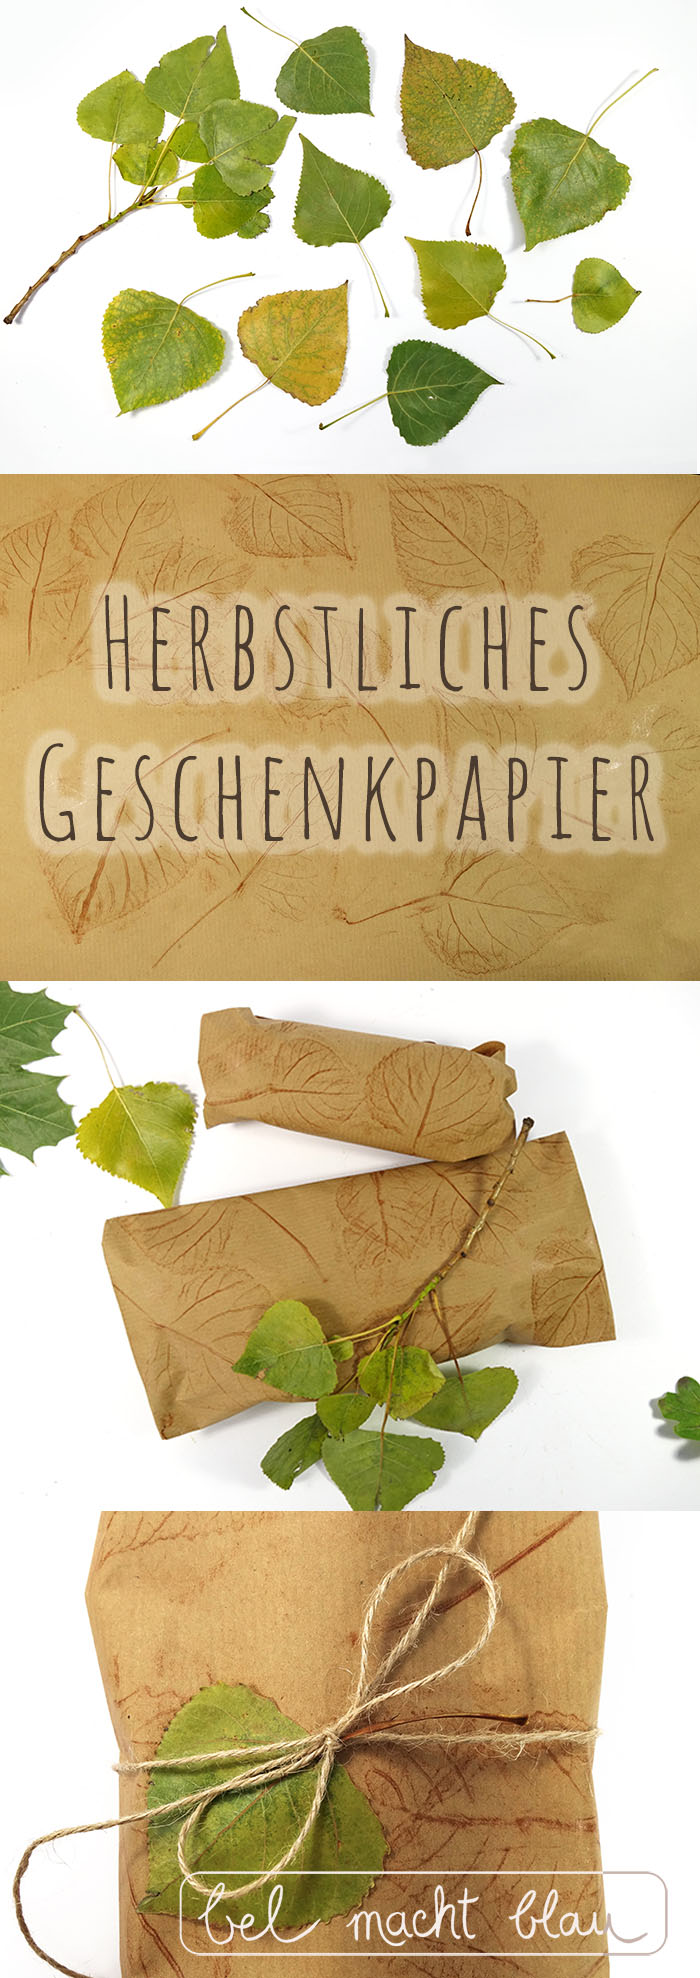 DIY - Herbstliches Geschenkpapier mit Blätterprint - kinderleicht!